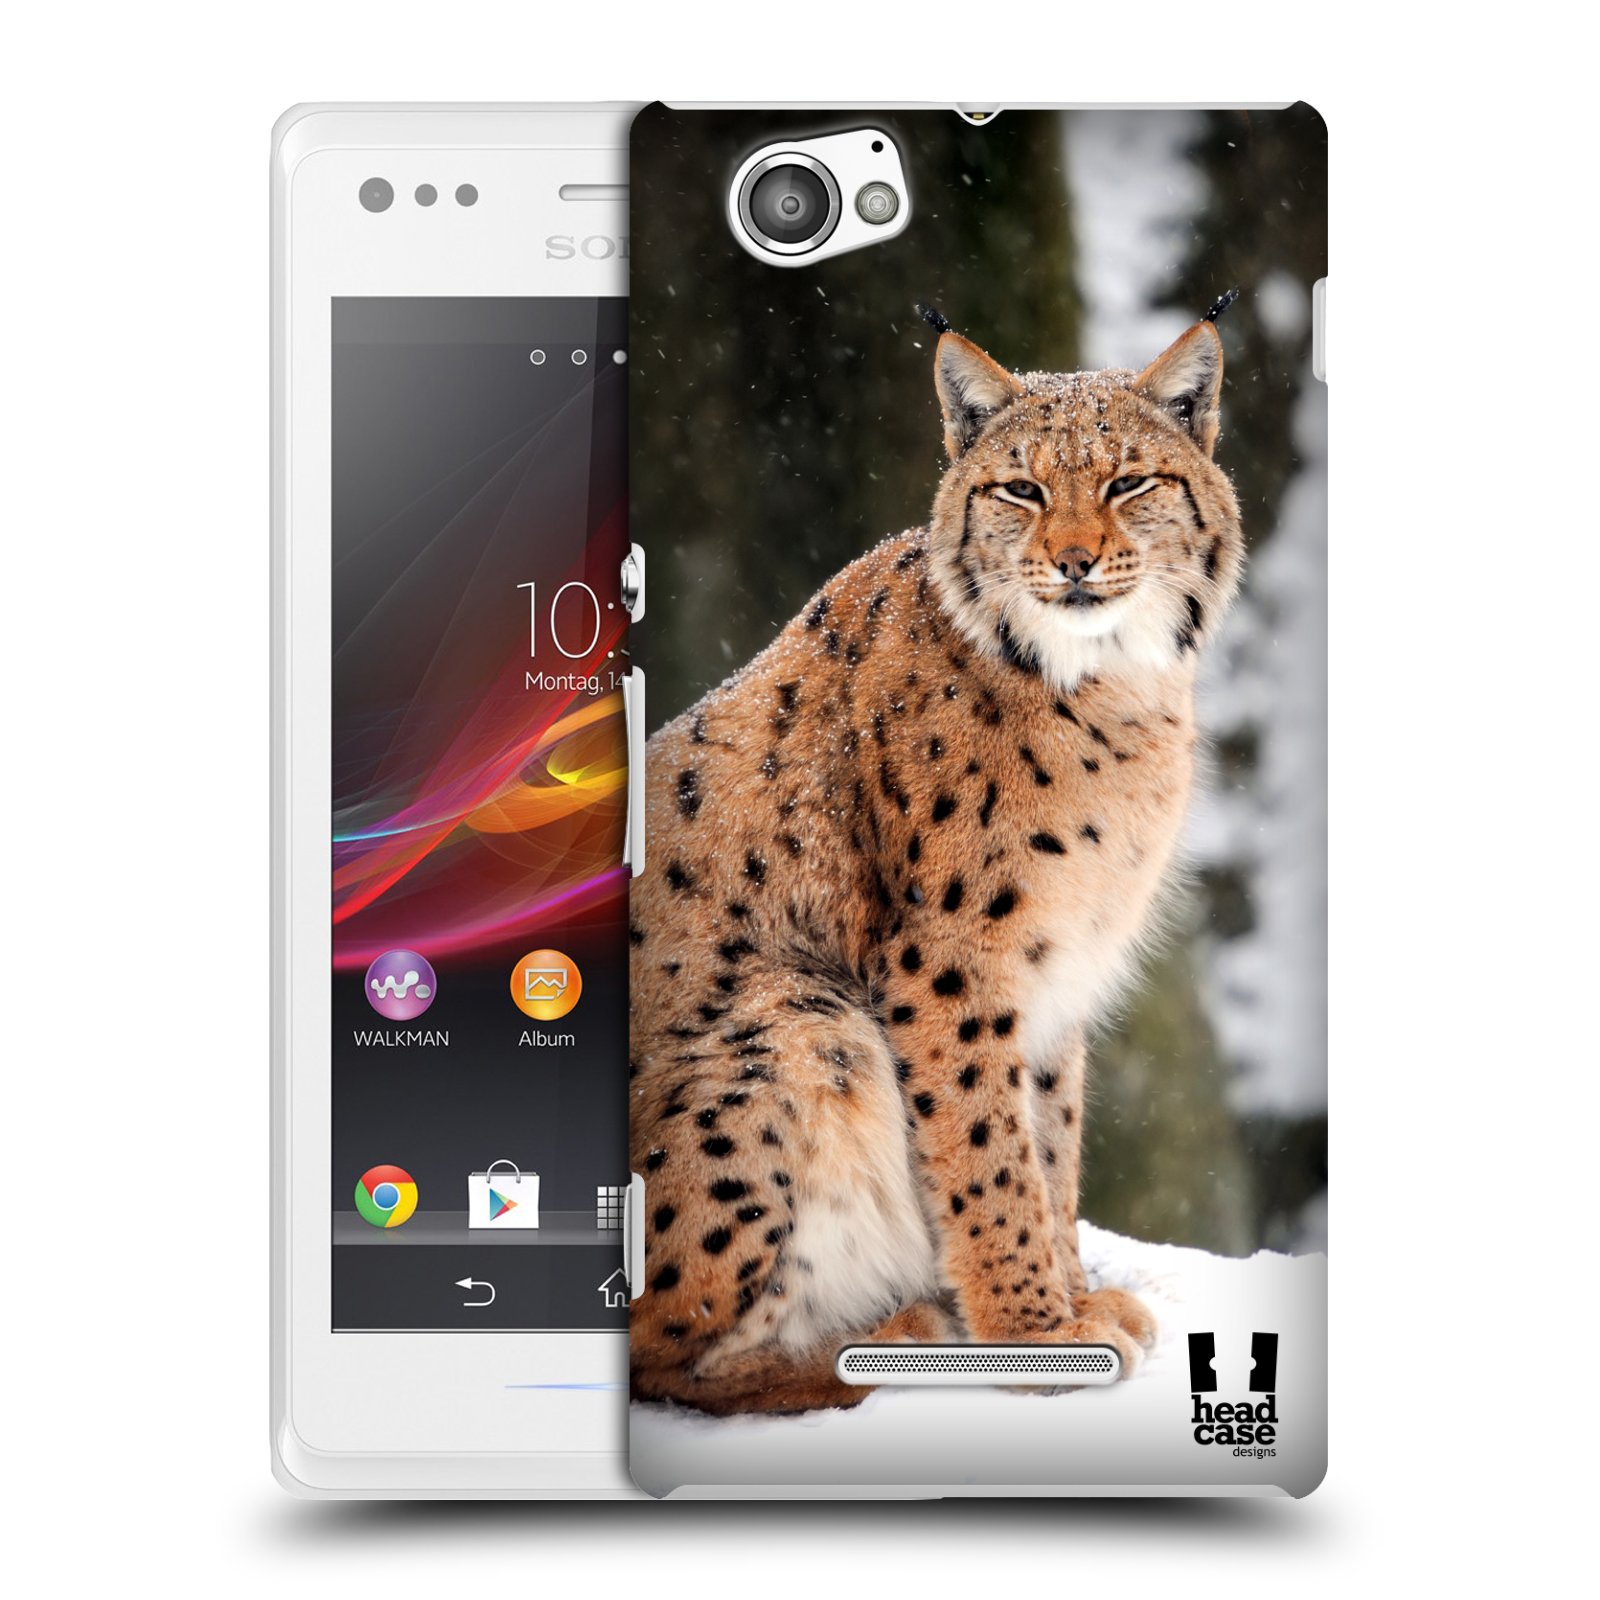 HEAD CASE plastový obal na mobil Sony Xperia M vzor slavná zvířata foto rys